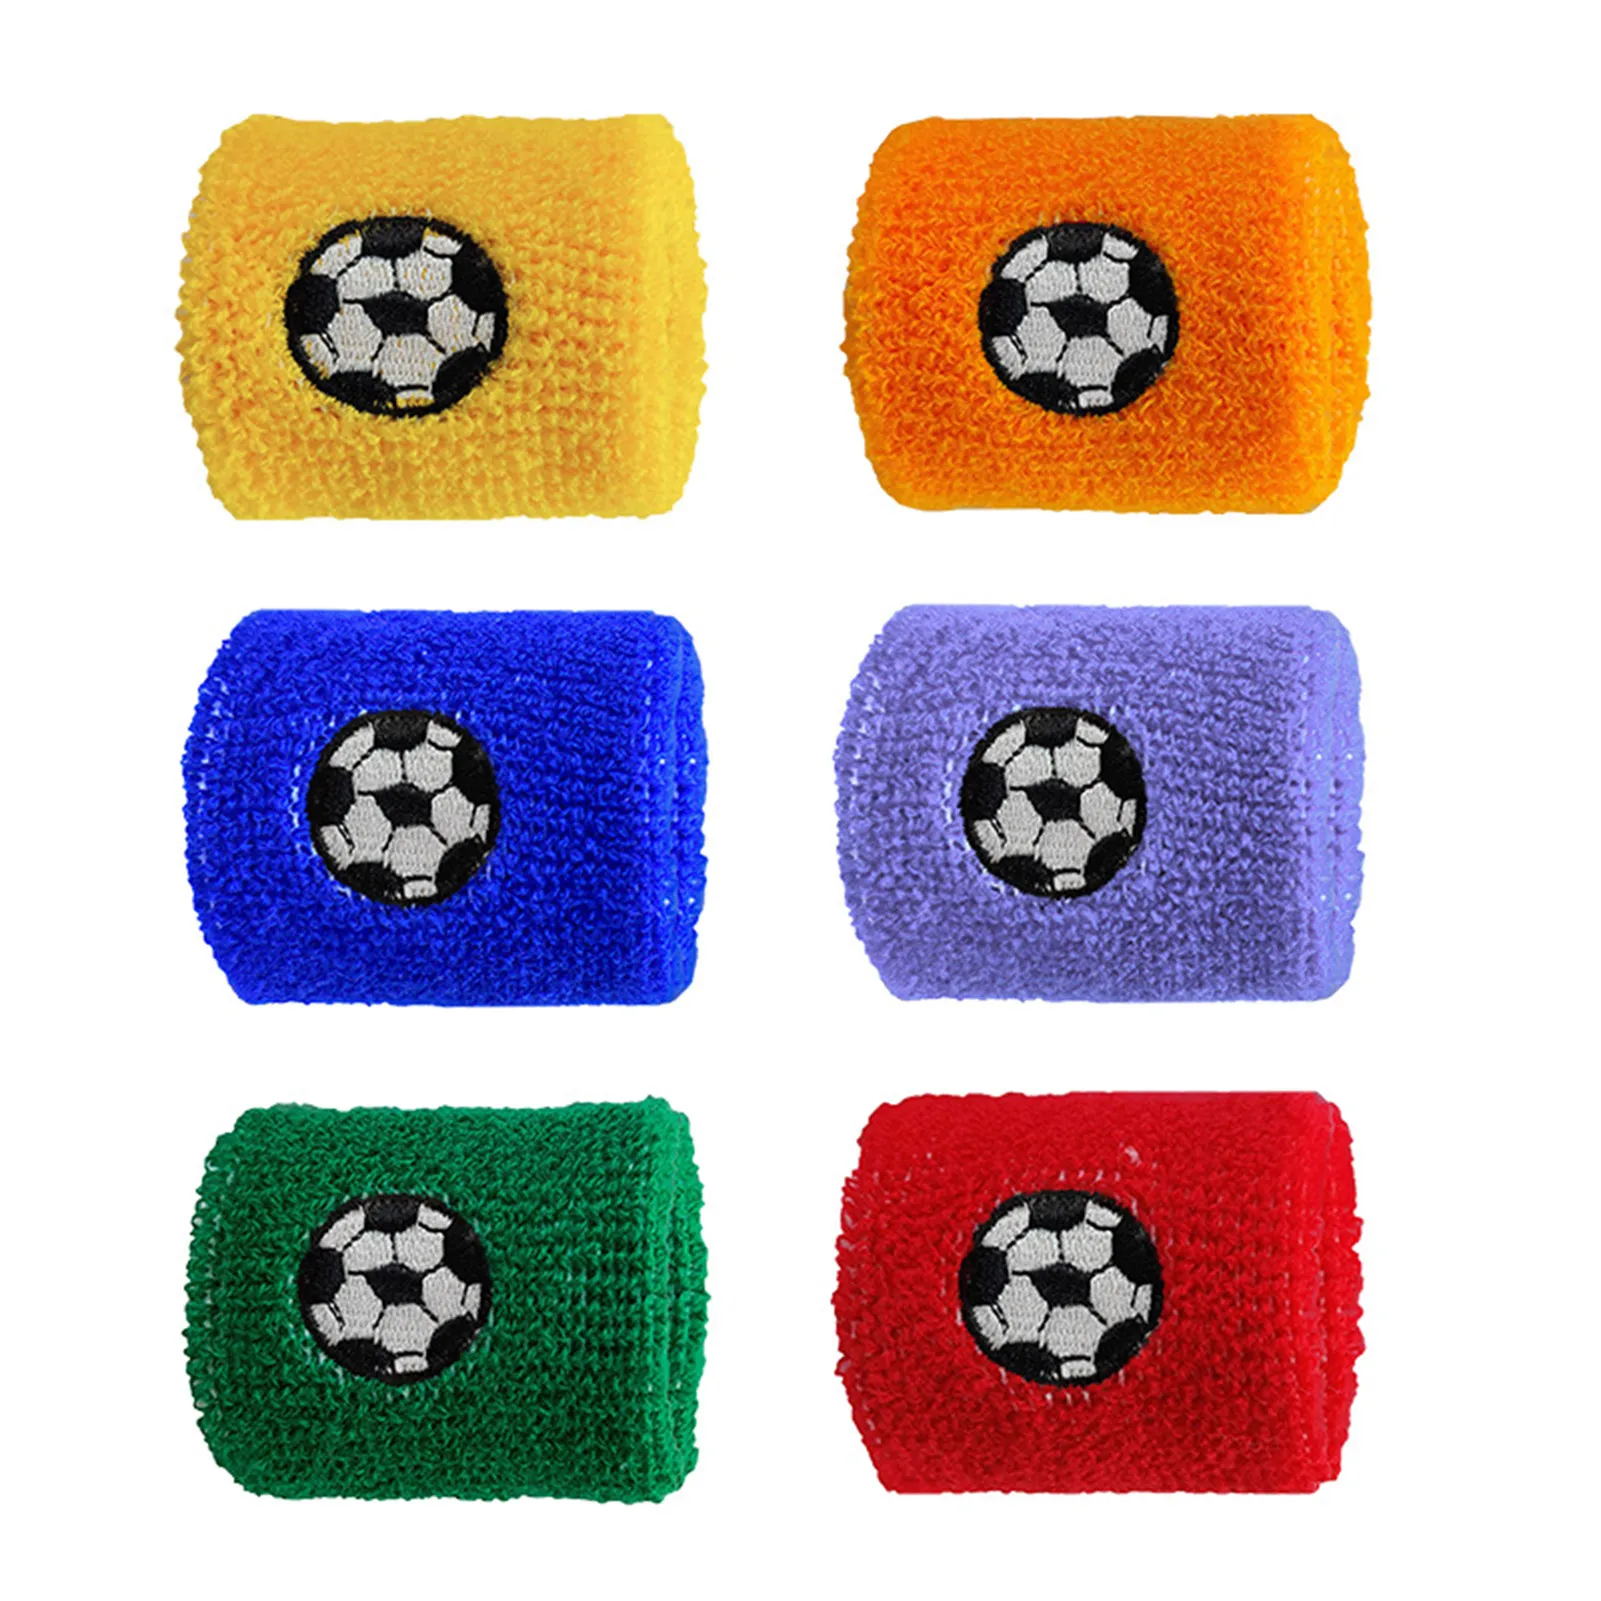 

Детские спортивные браслеты спортивные дизайнерские футбольные баскетбольные футбольные и бейсбольные узоры детские спортивные браслеты...